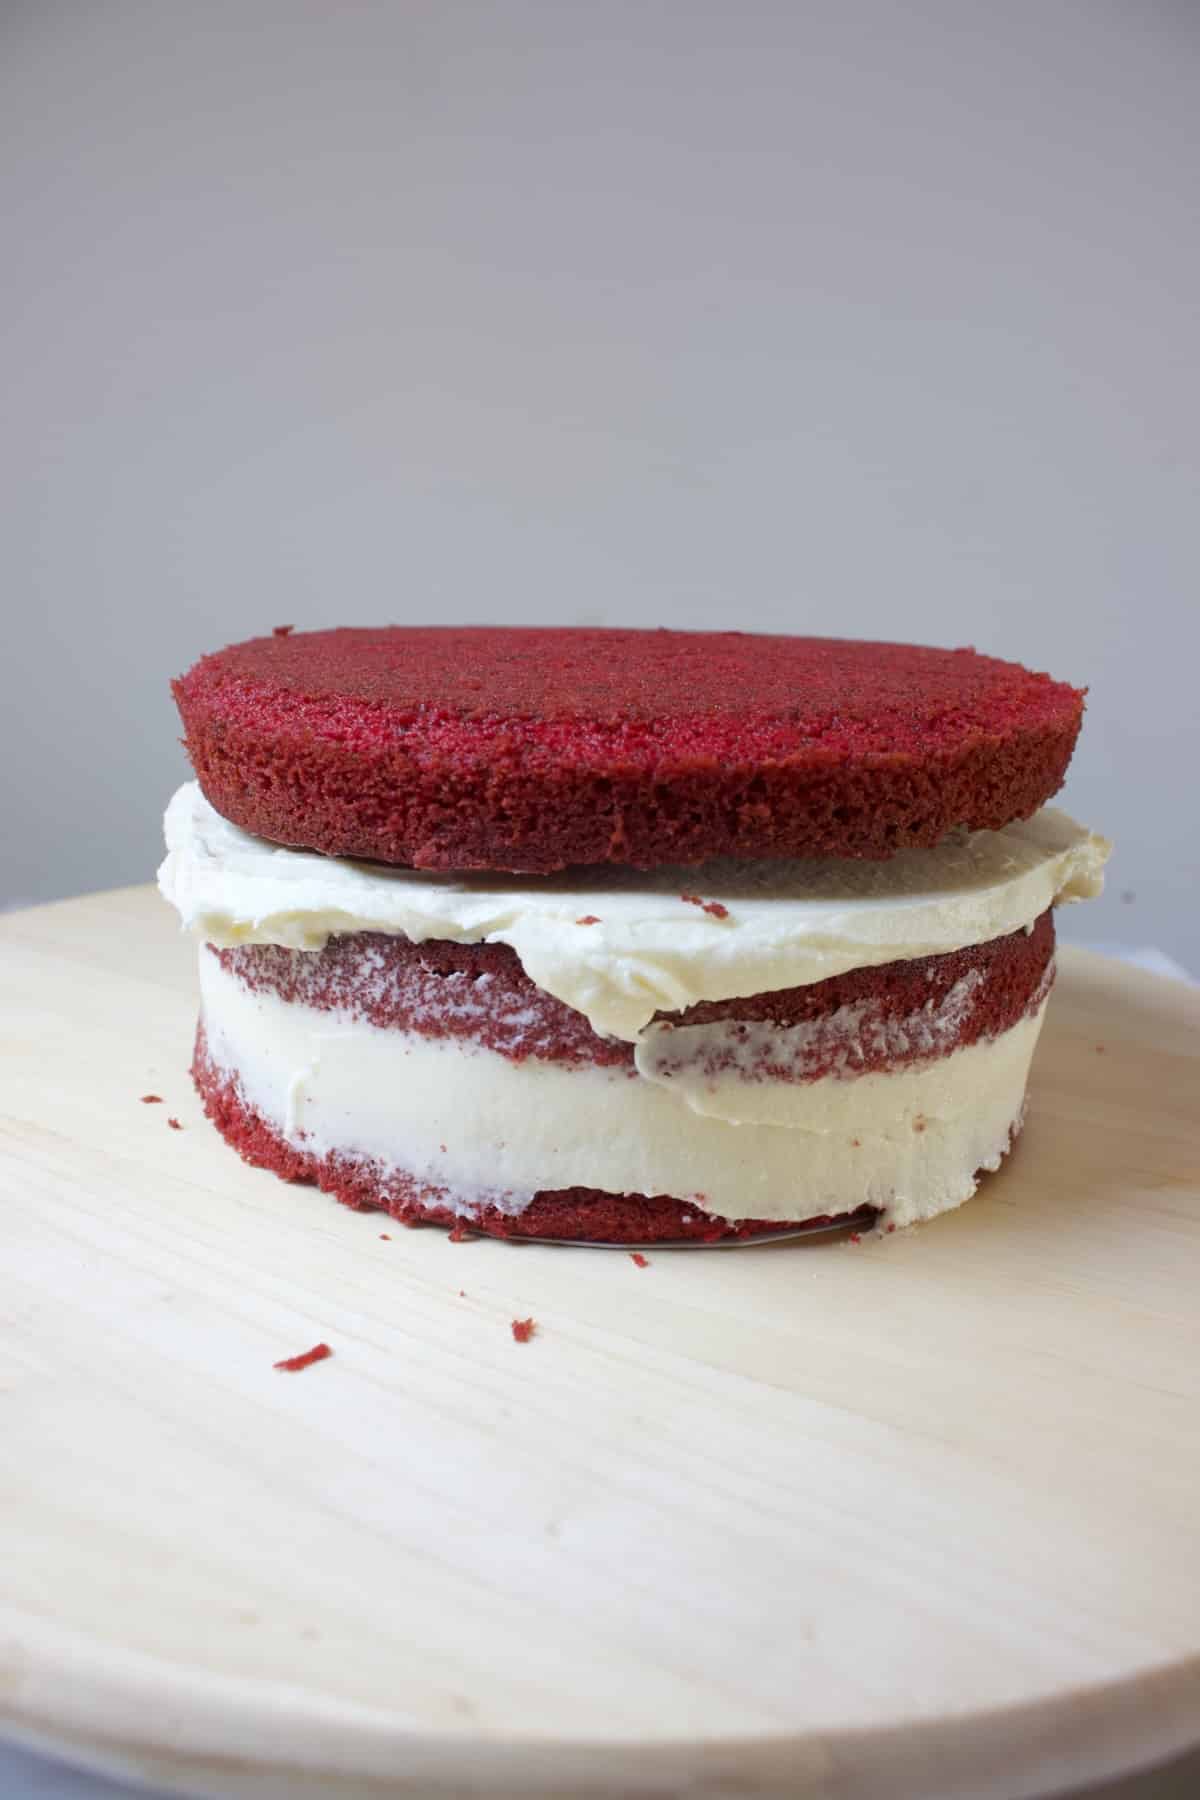 drie lagen red velvet cake die deels gevuld zijn met roomkaas creme voor een red velvet stapeltaart